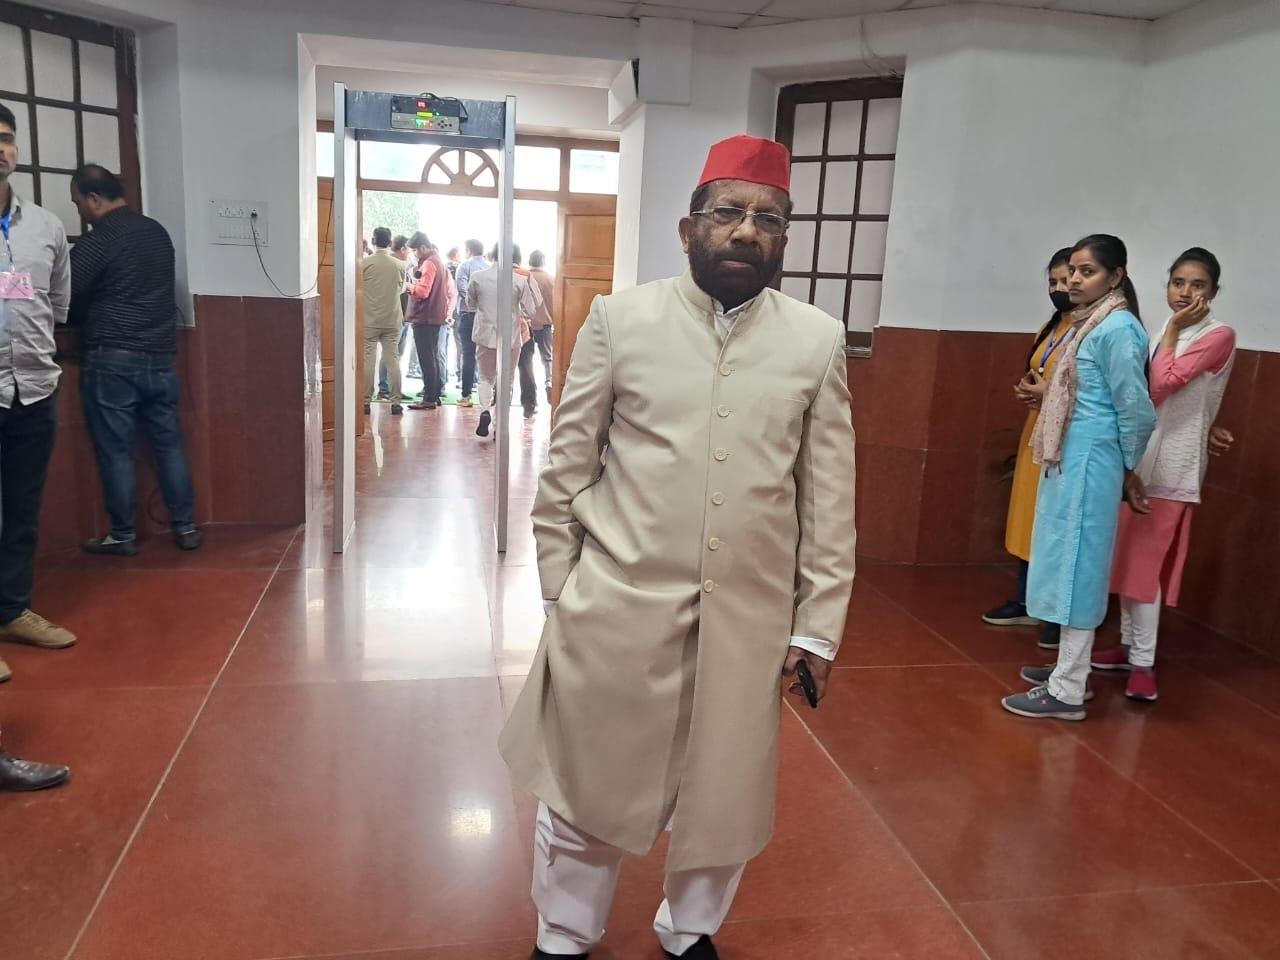 आजम खान के समर्थन में शेरवानी पहनकर सदन में पहुंचे सपा विधायक